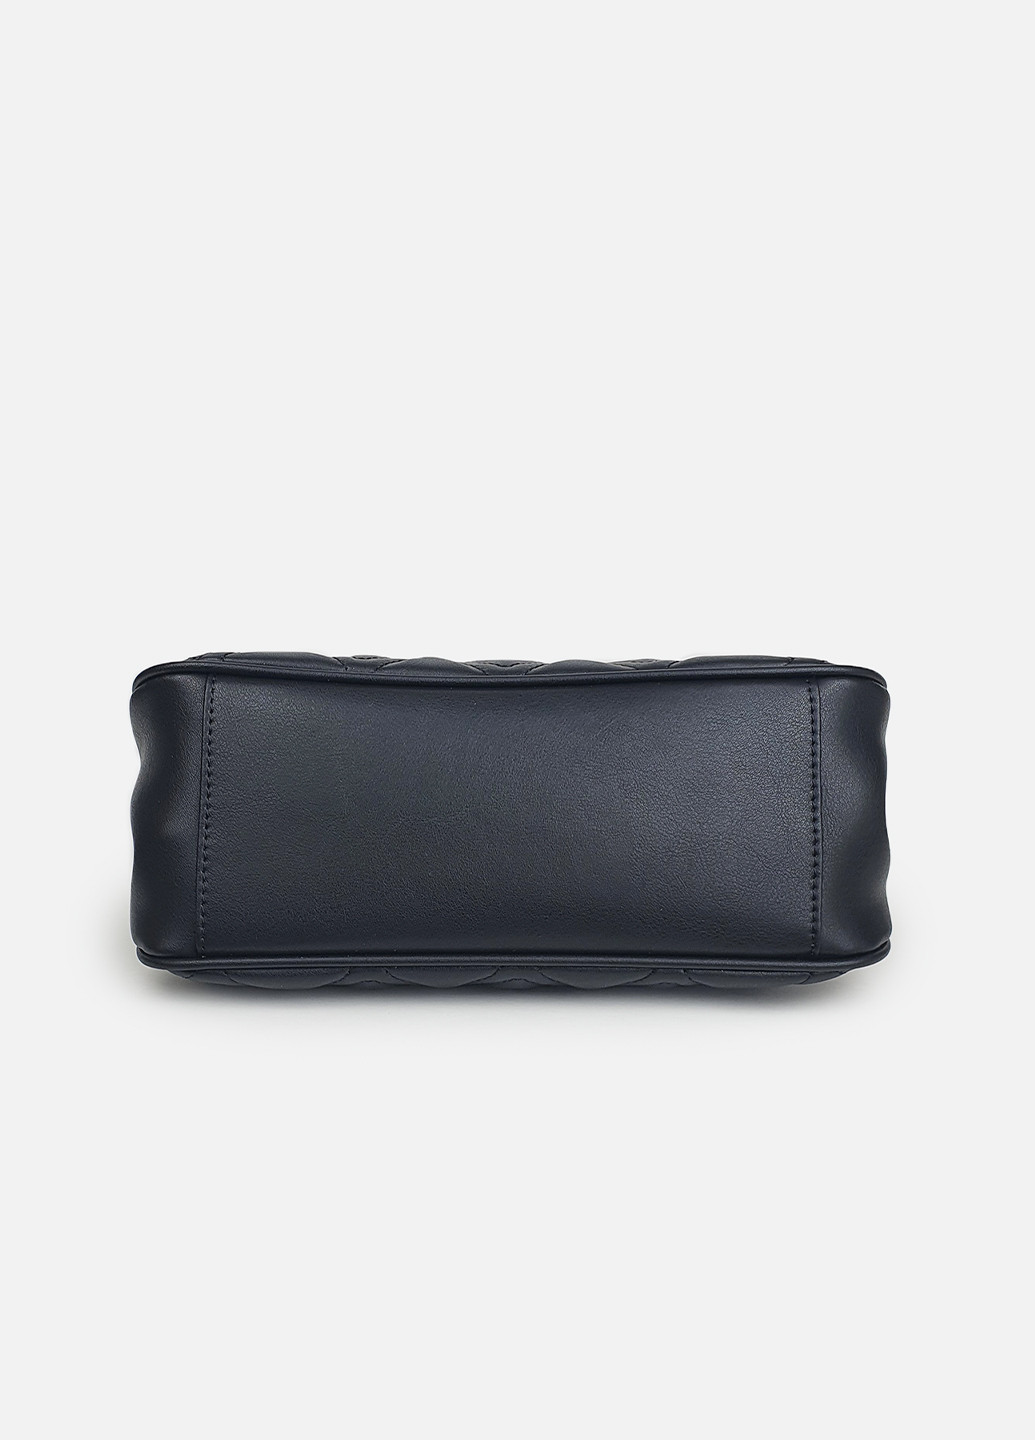 Черная сумка на цепочке средняя классическая кожаная Fashion (234708997)